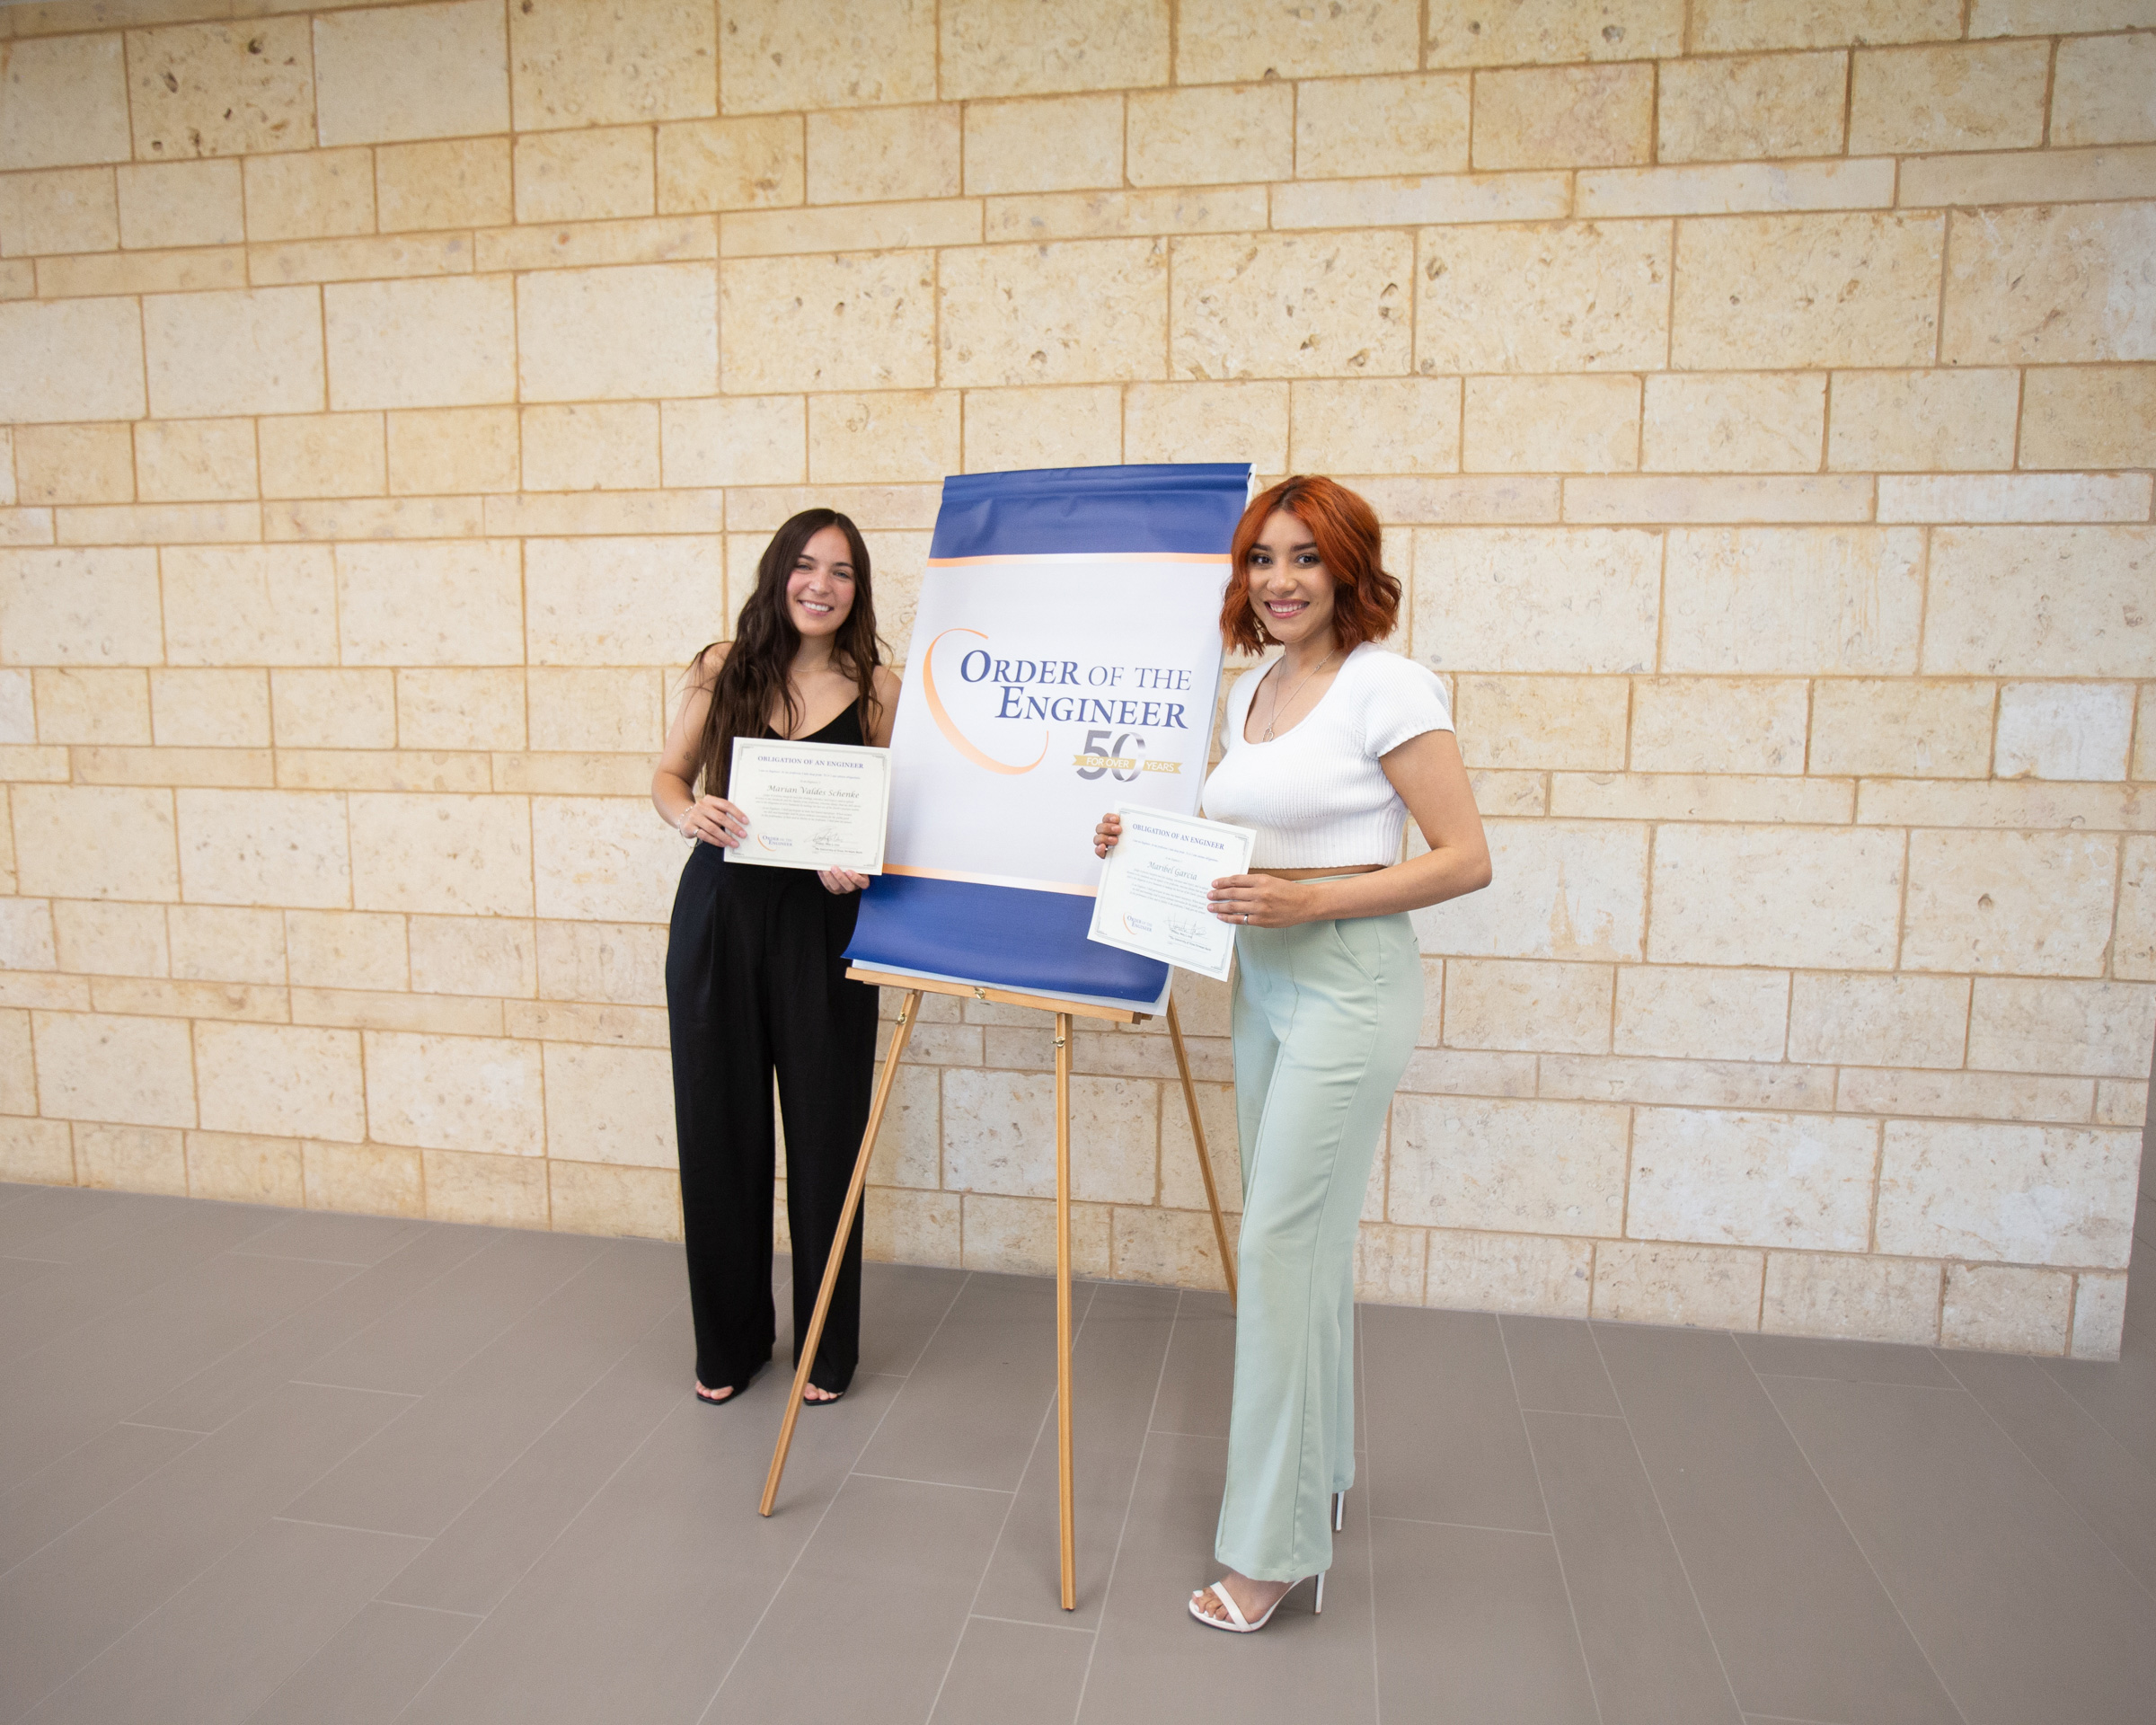 Dos estudiantes de ingeniería posando con certificados de la Orden del Ingeniero